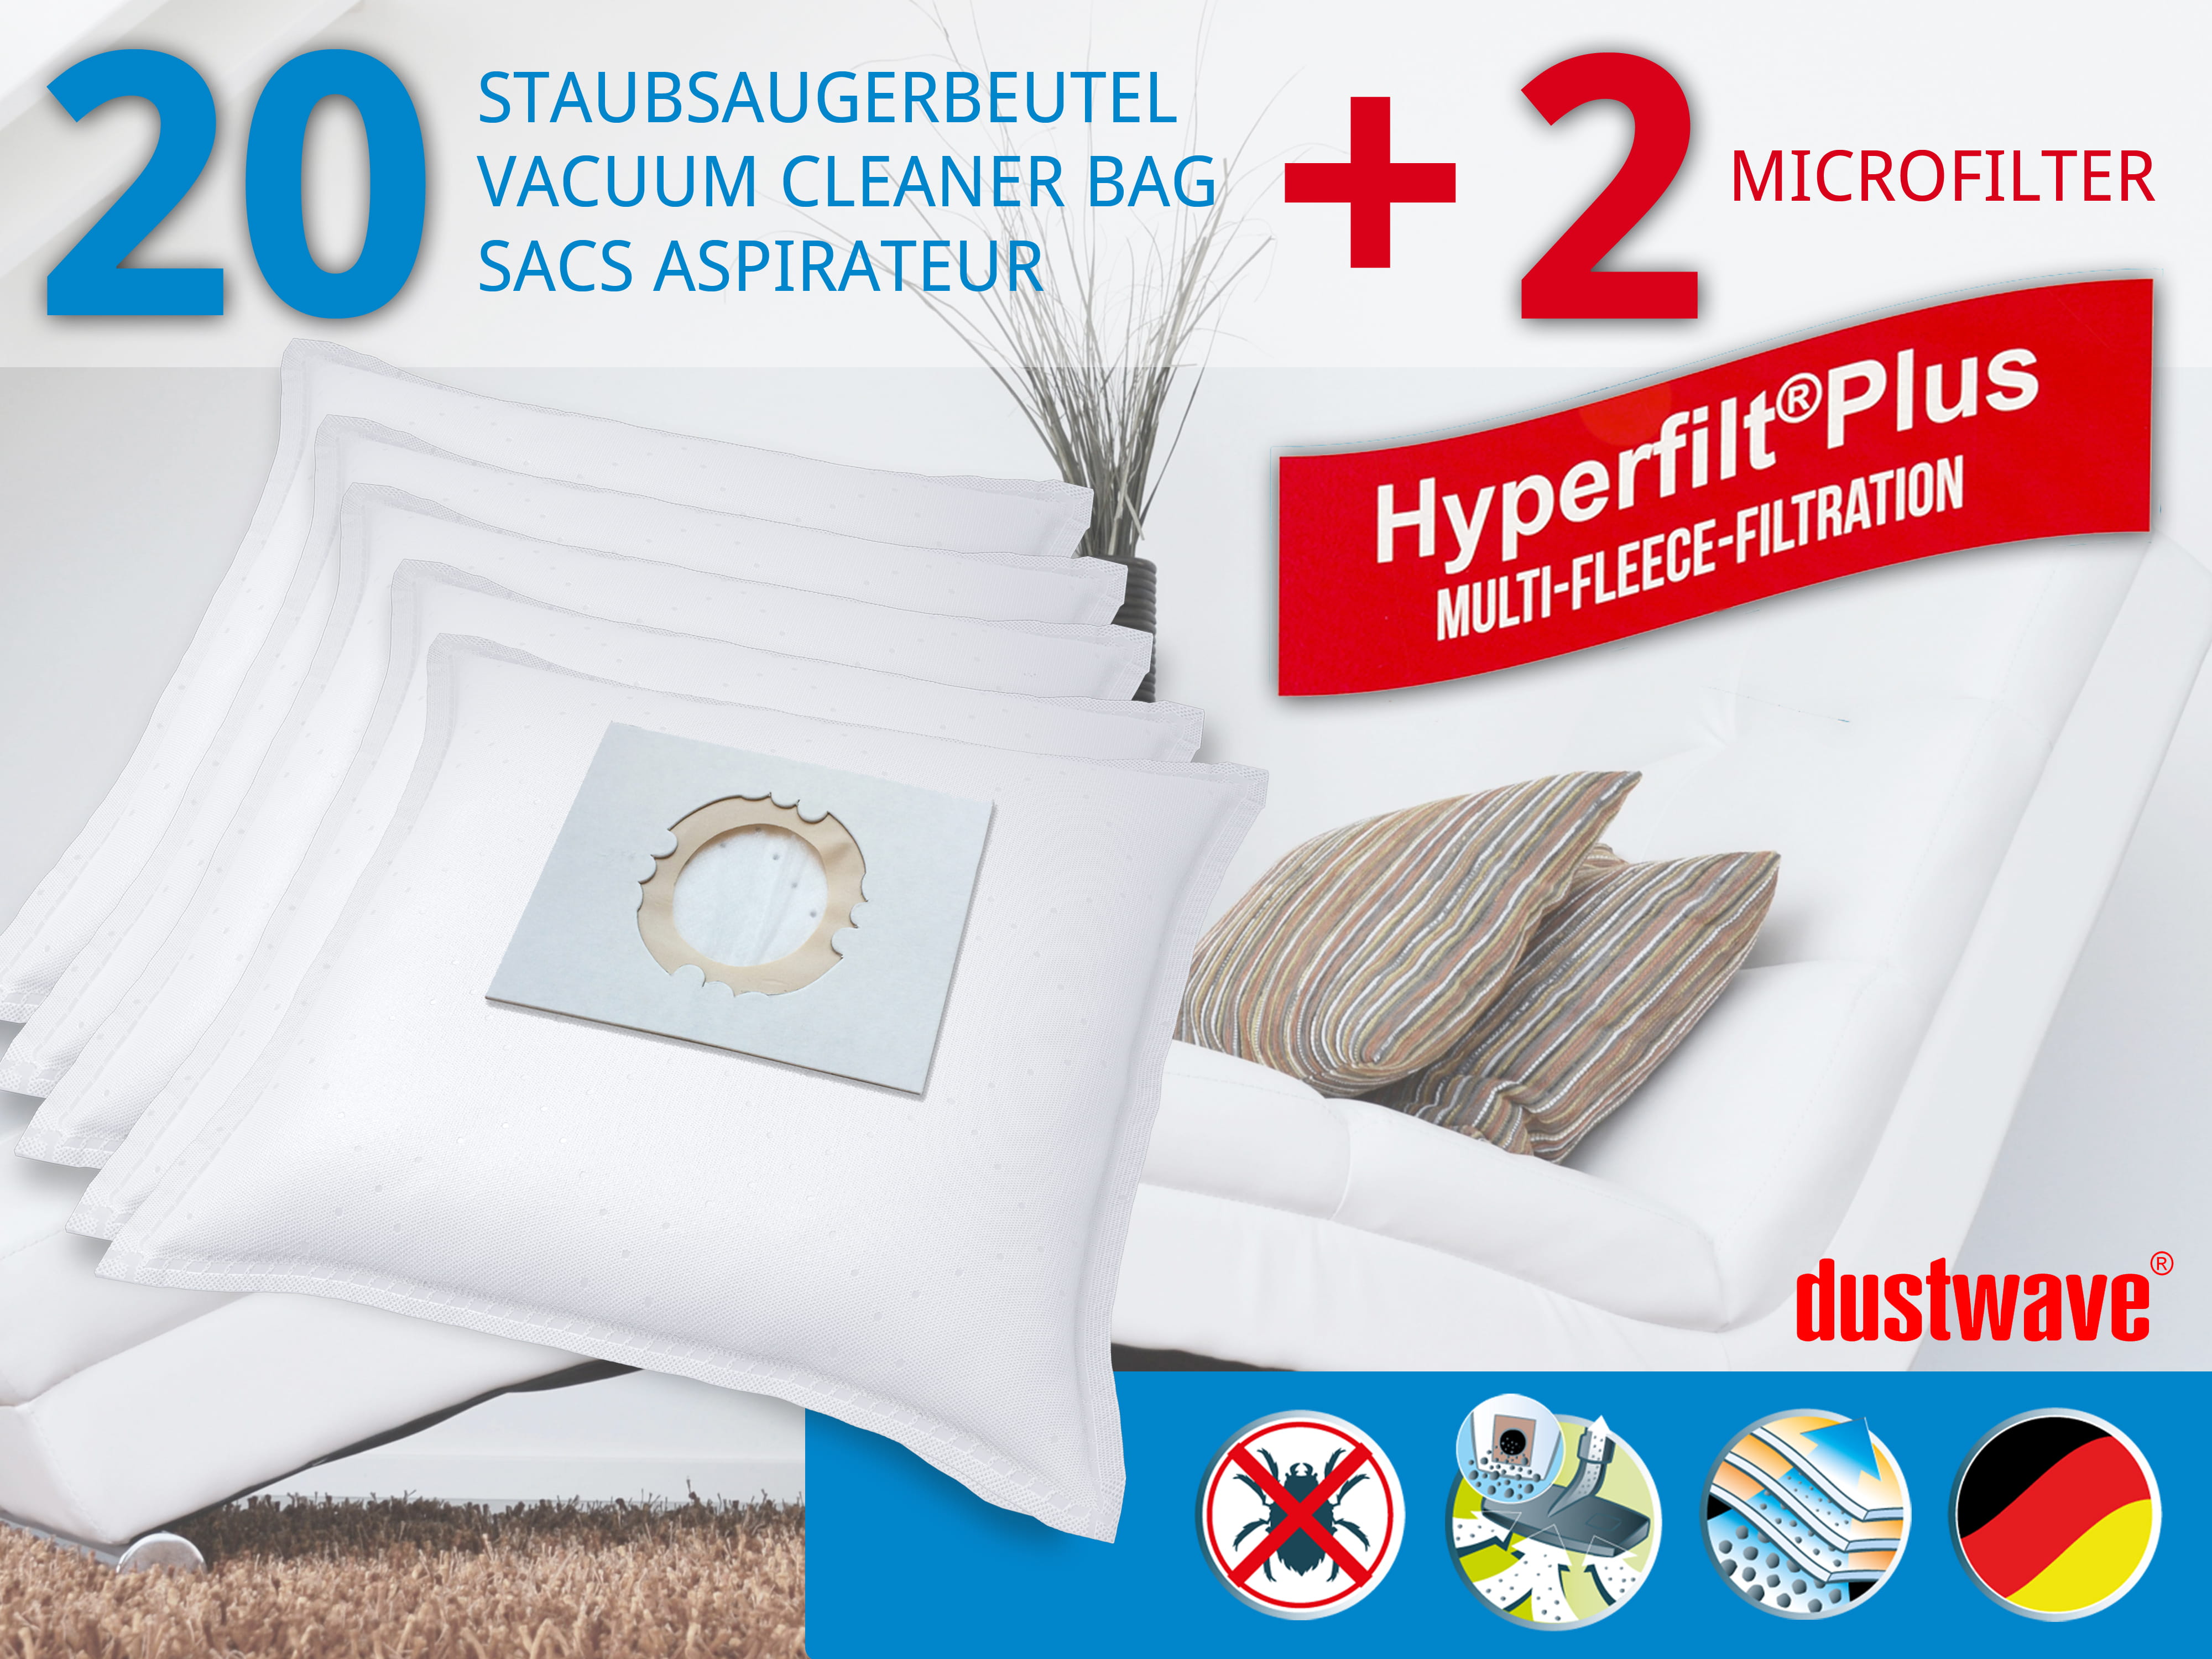 Dustwave® 20 Staubsaugerbeutel für Hoover SCST335EC011 - hocheffizient, mehrlagiges Mikrovlies mit Hygieneverschluss - Made in Germany